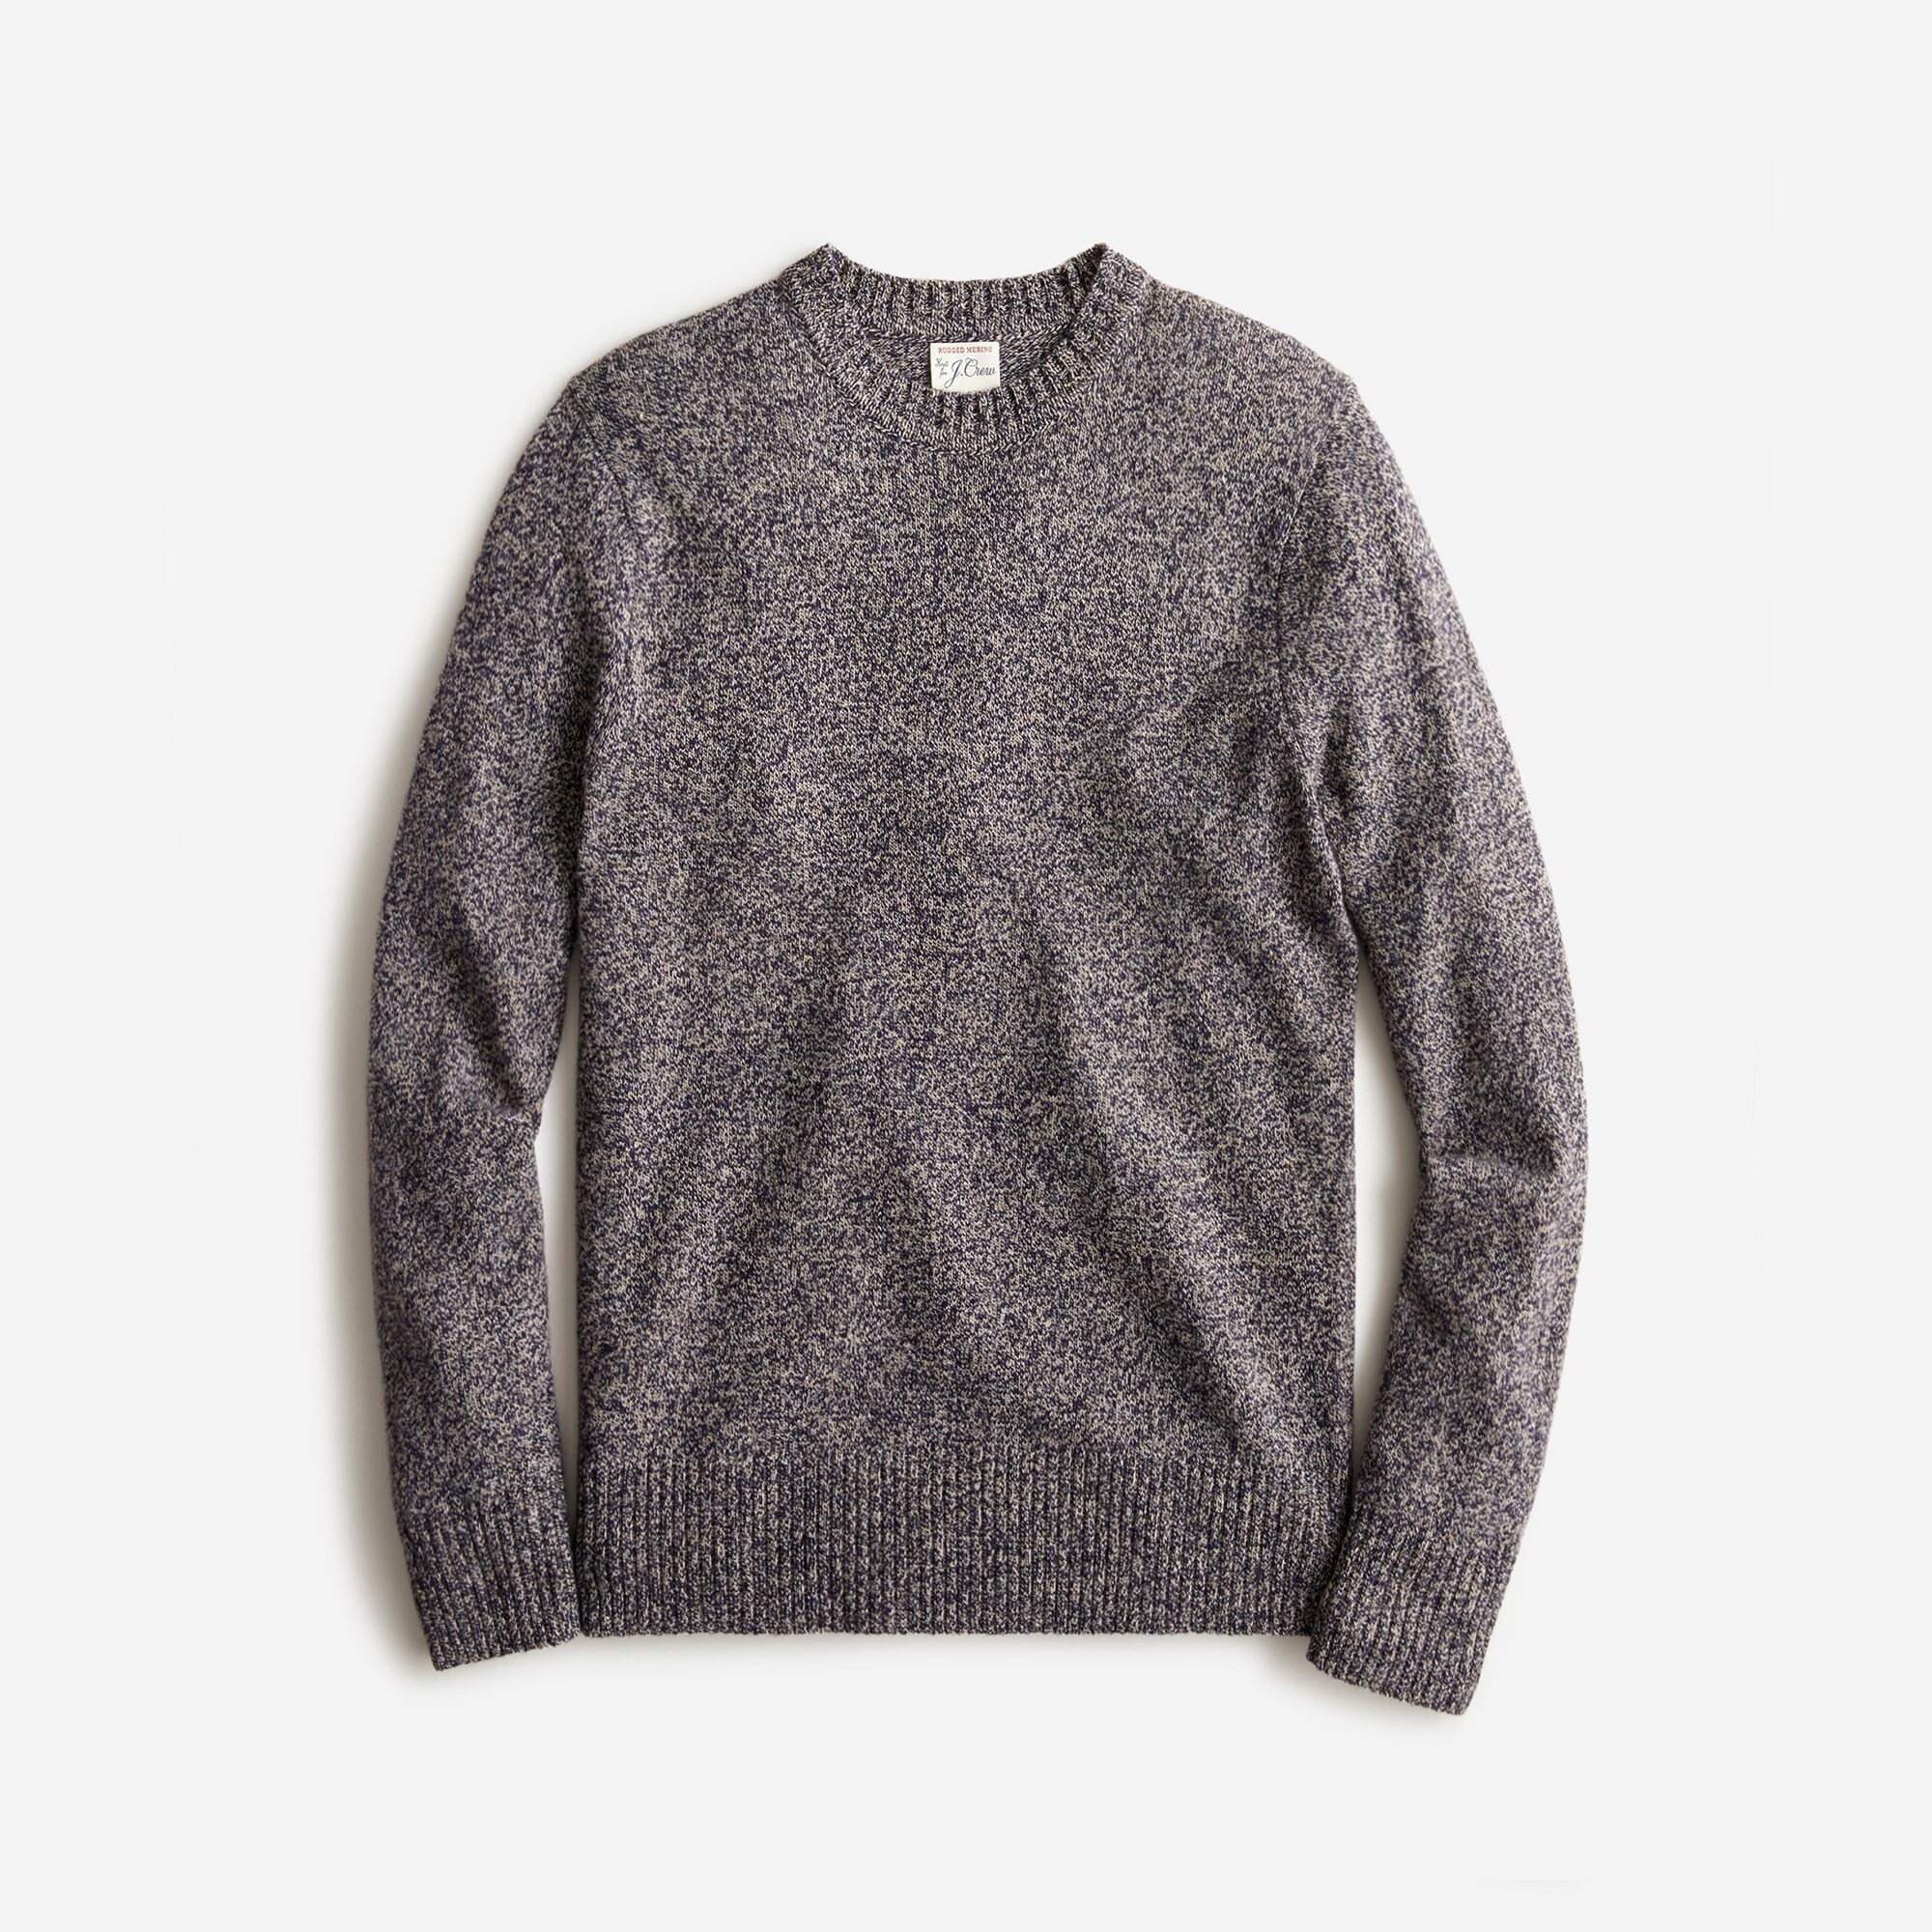  Marled rugged merino wool-blend sweater